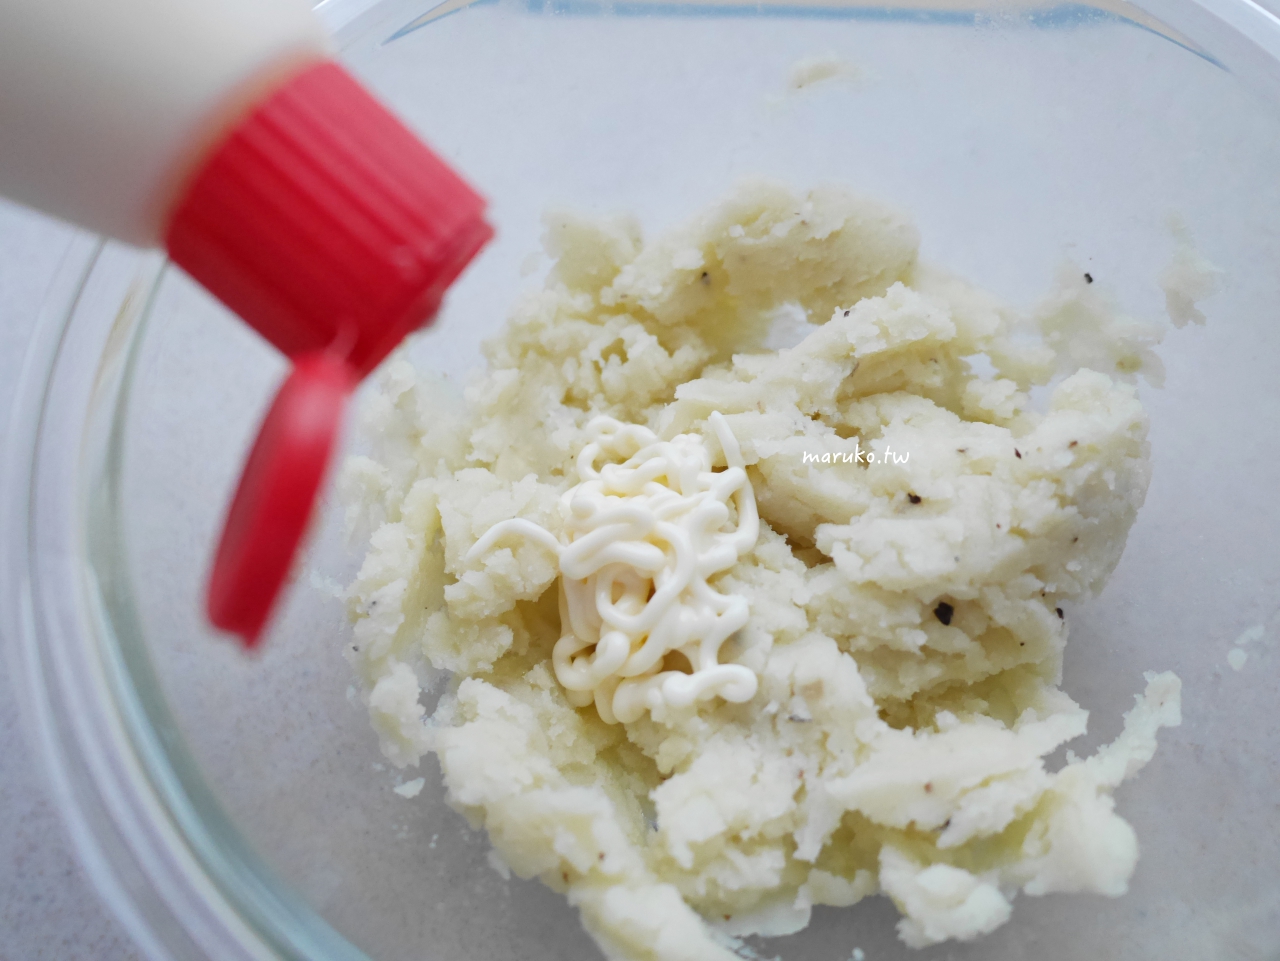 【食譜】奶油馬鈴薯香腸 鬆軟馬鈴薯泥創意食譜 平底鍋料理 @Maruko與美食有個約會